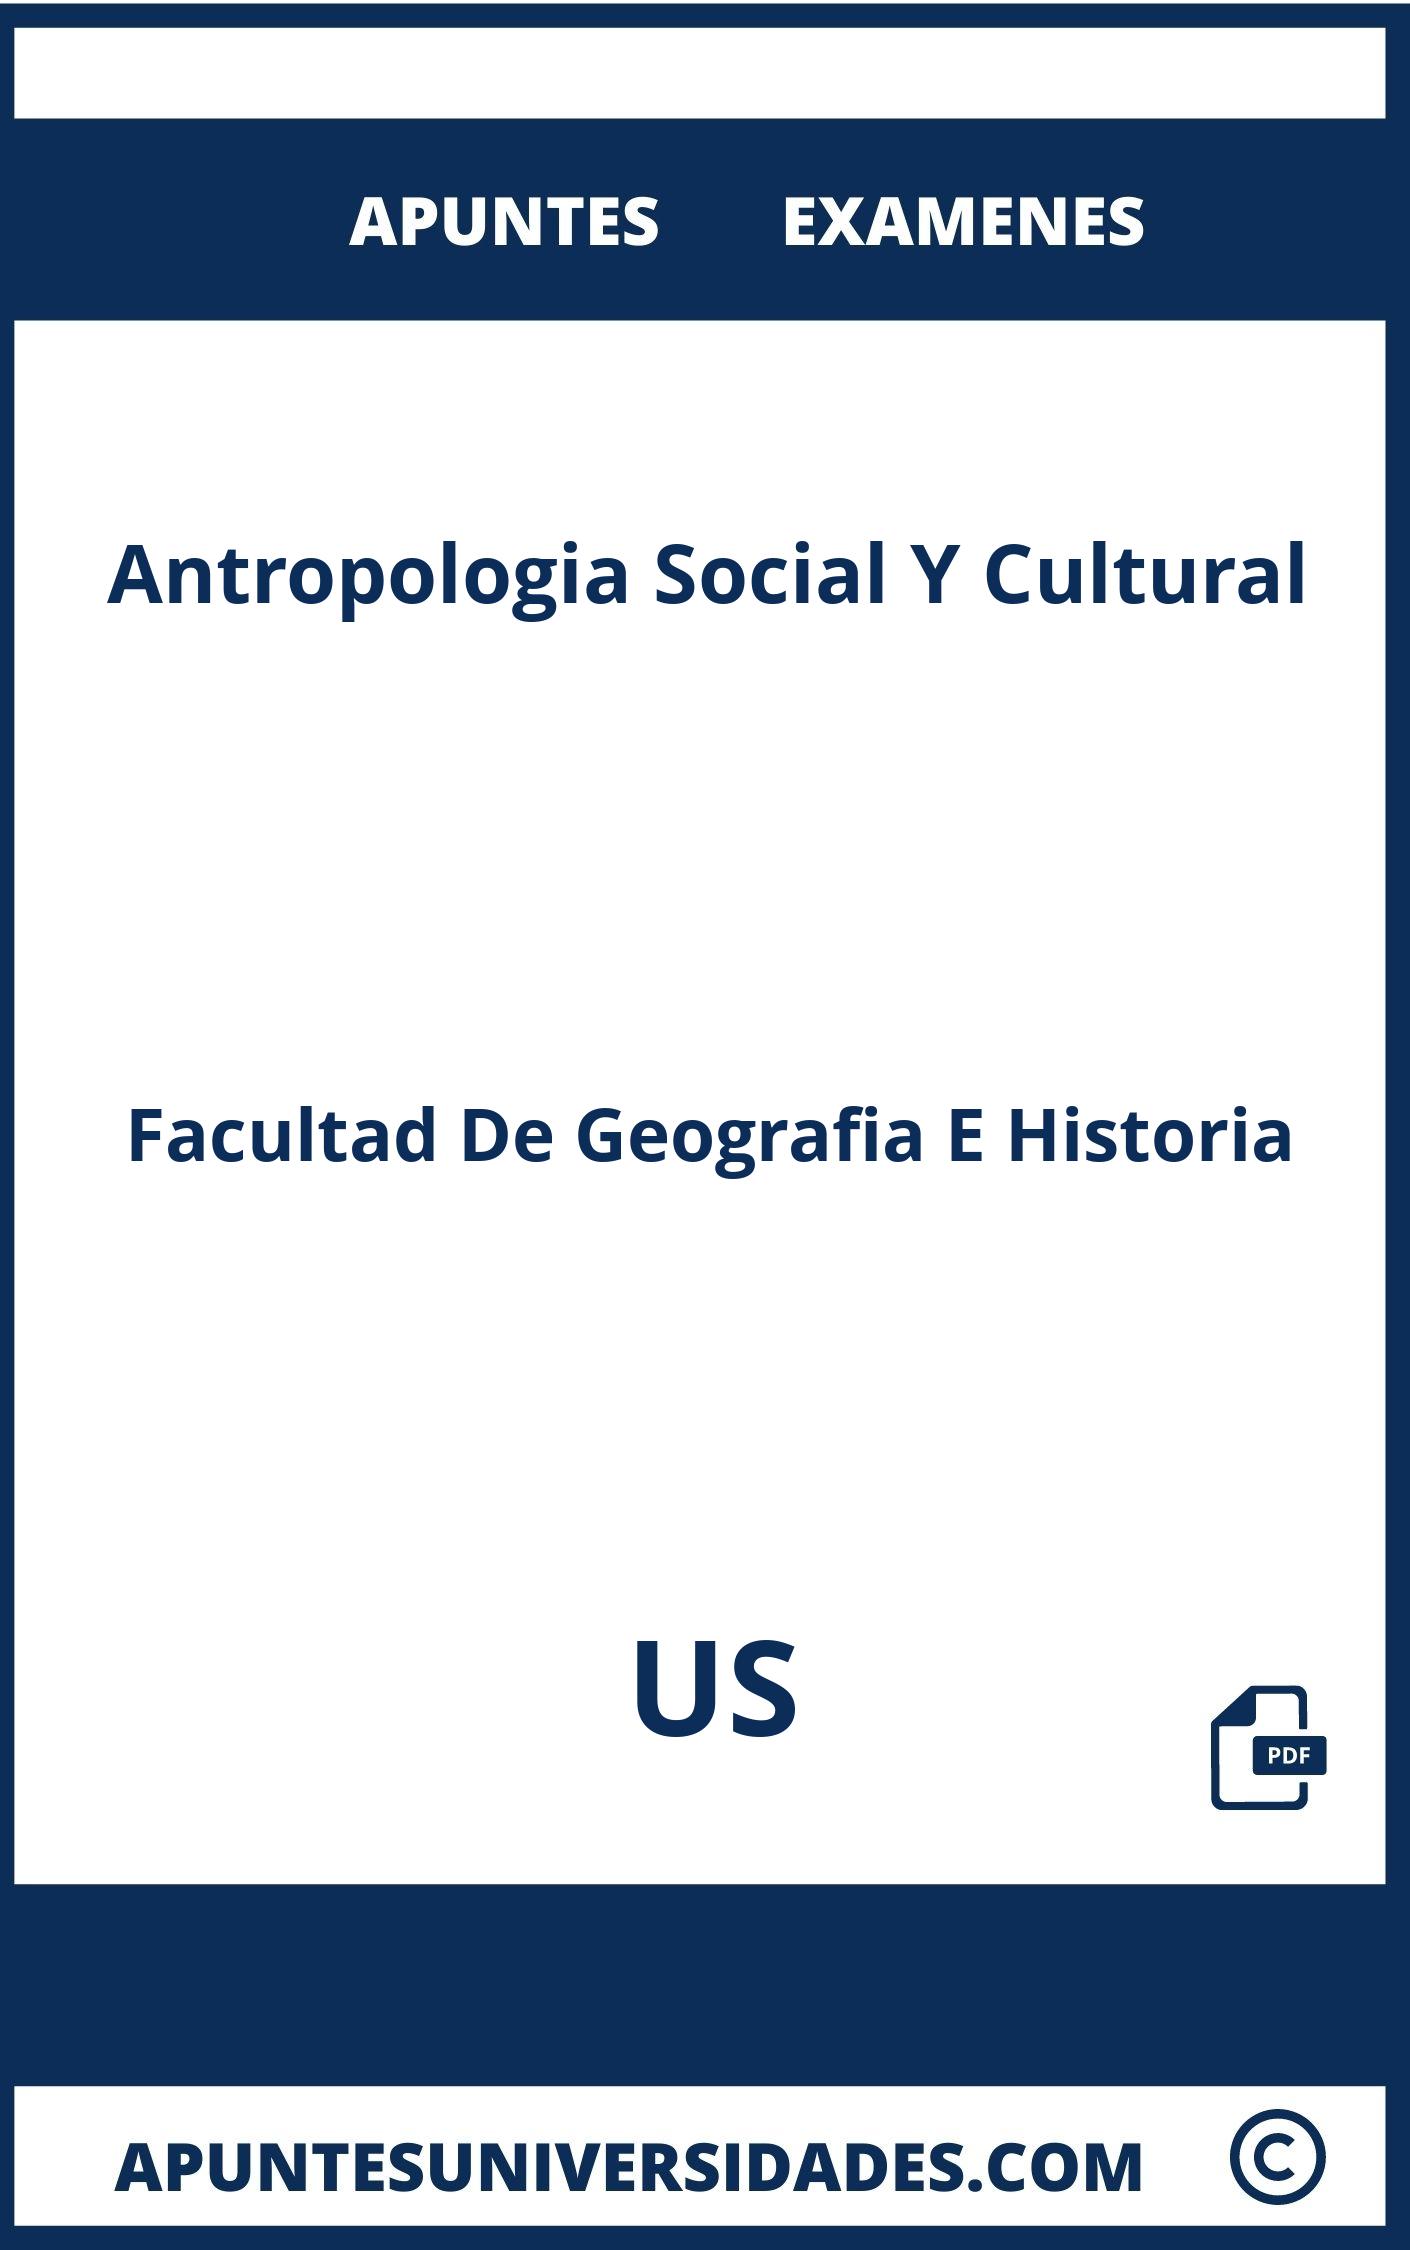 Apuntes y Examenes Antropologia Social Y Cultural US